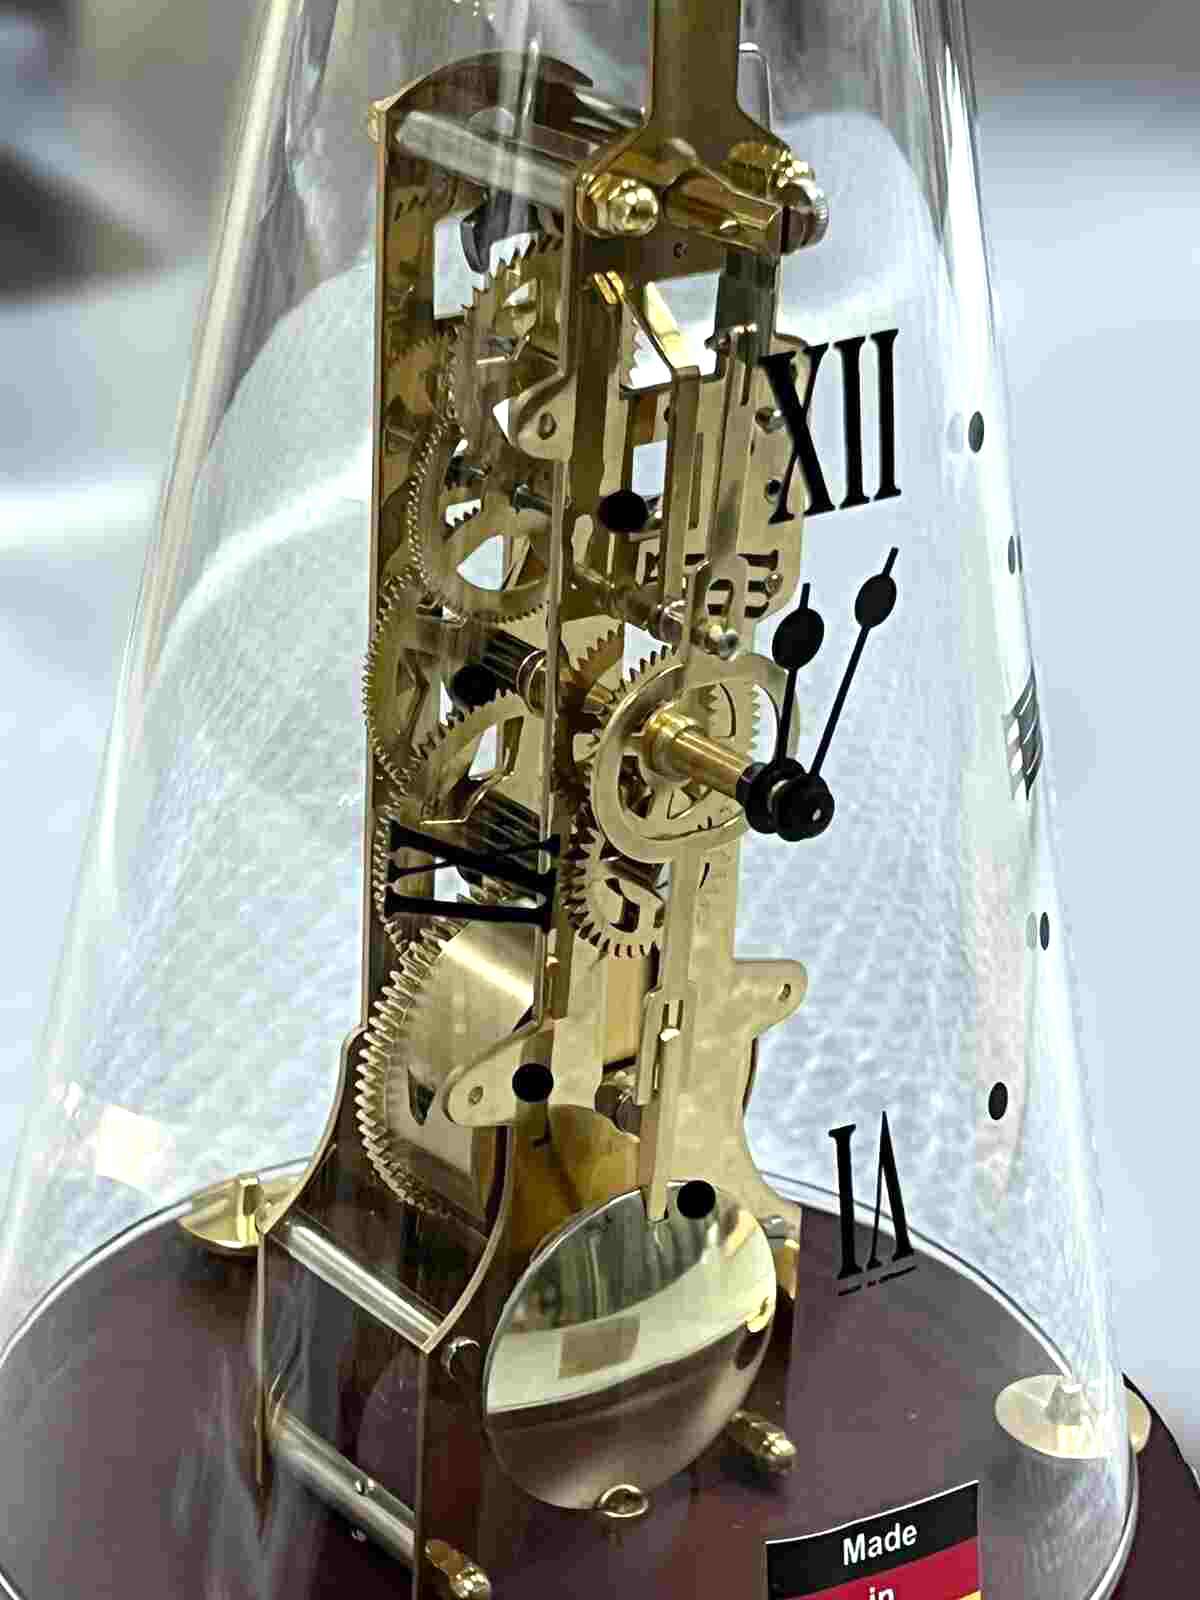 Фото часов Настольные механические часы Hermle 0791-70-716